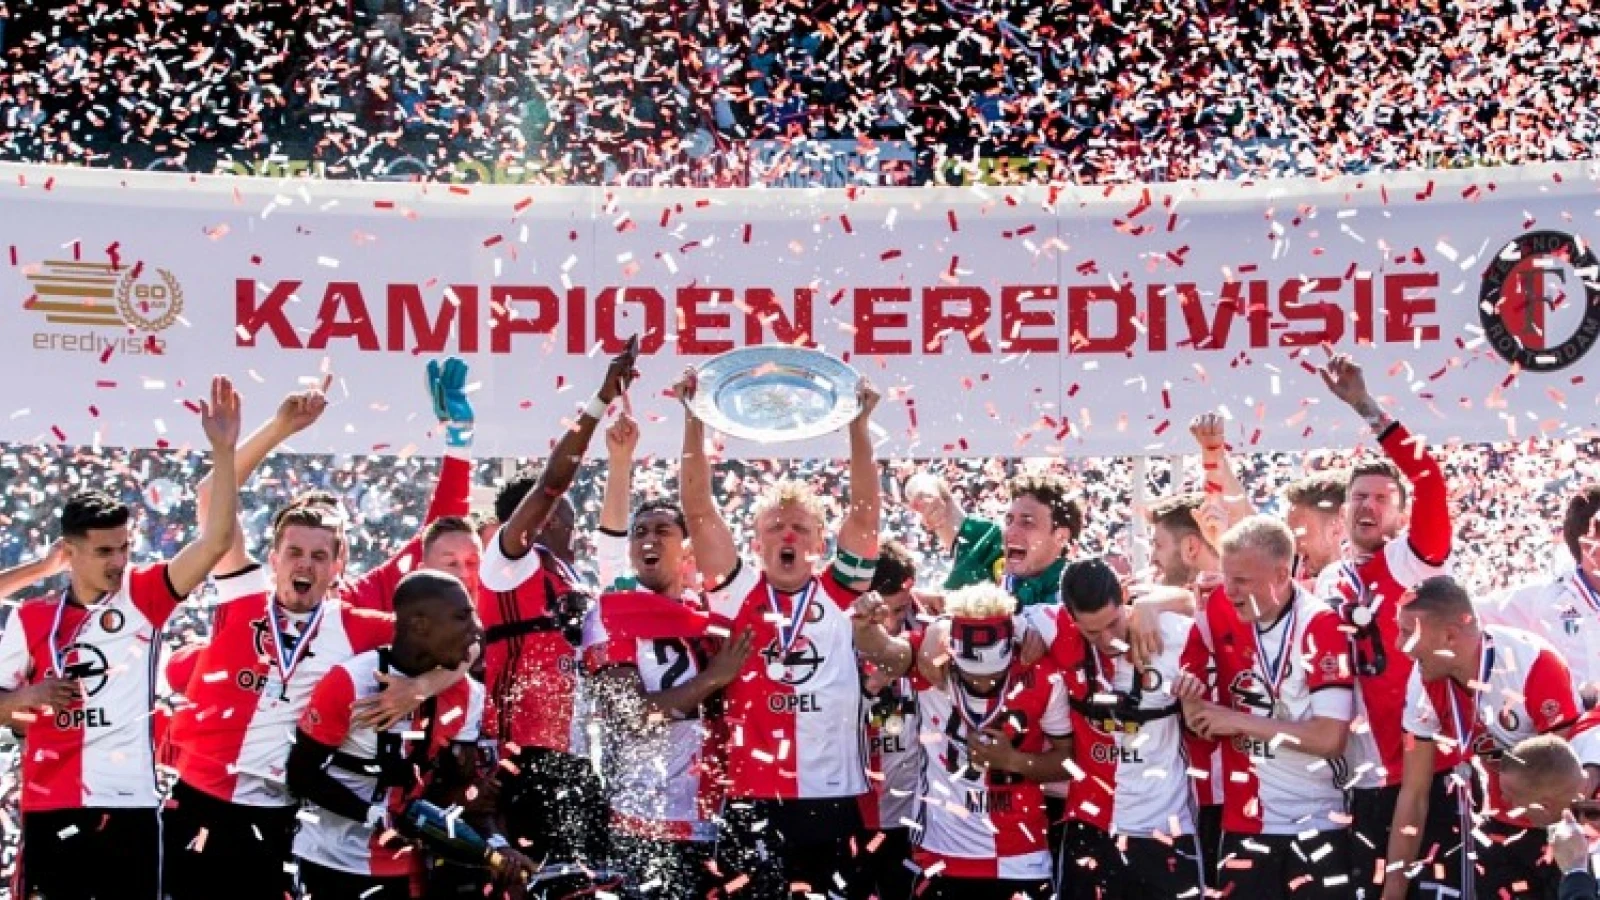 Carel van Hees vereeuwigt kampioenschap Feyenoord in fotoboek 'Uit 1000 kelen'